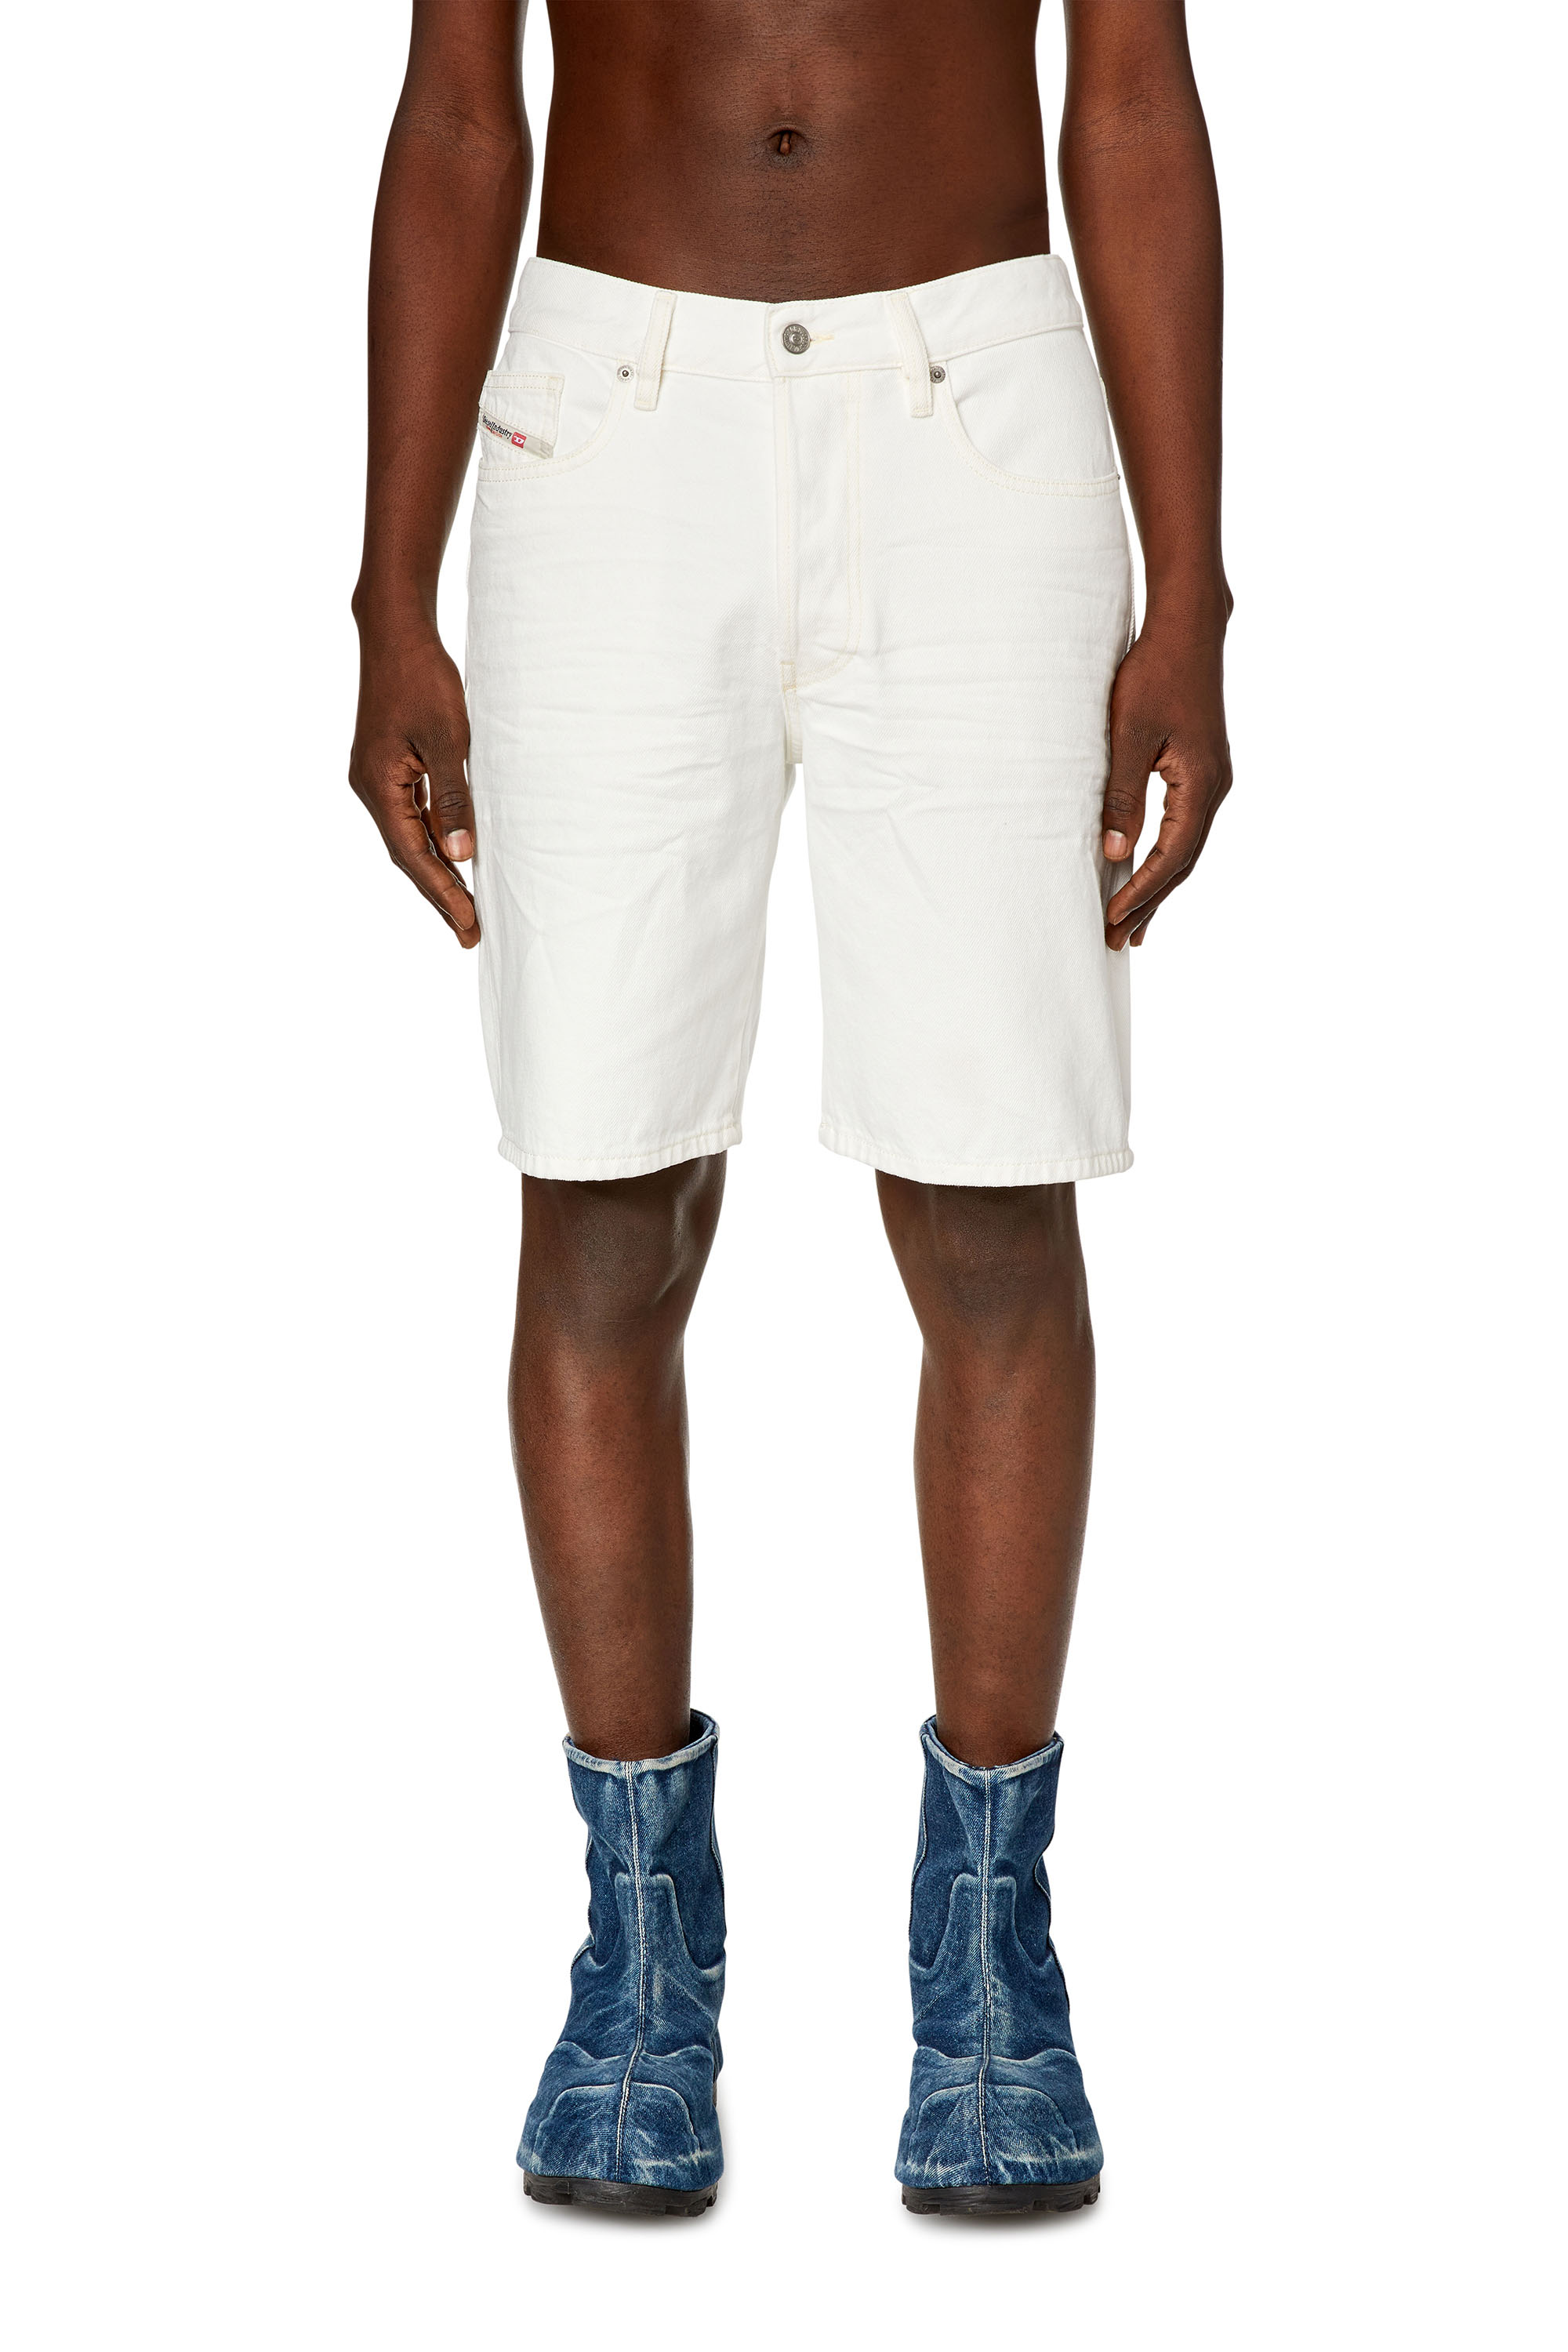 Diesel - Pantalones cortos en denim - Shorts - Hombre - Blanco